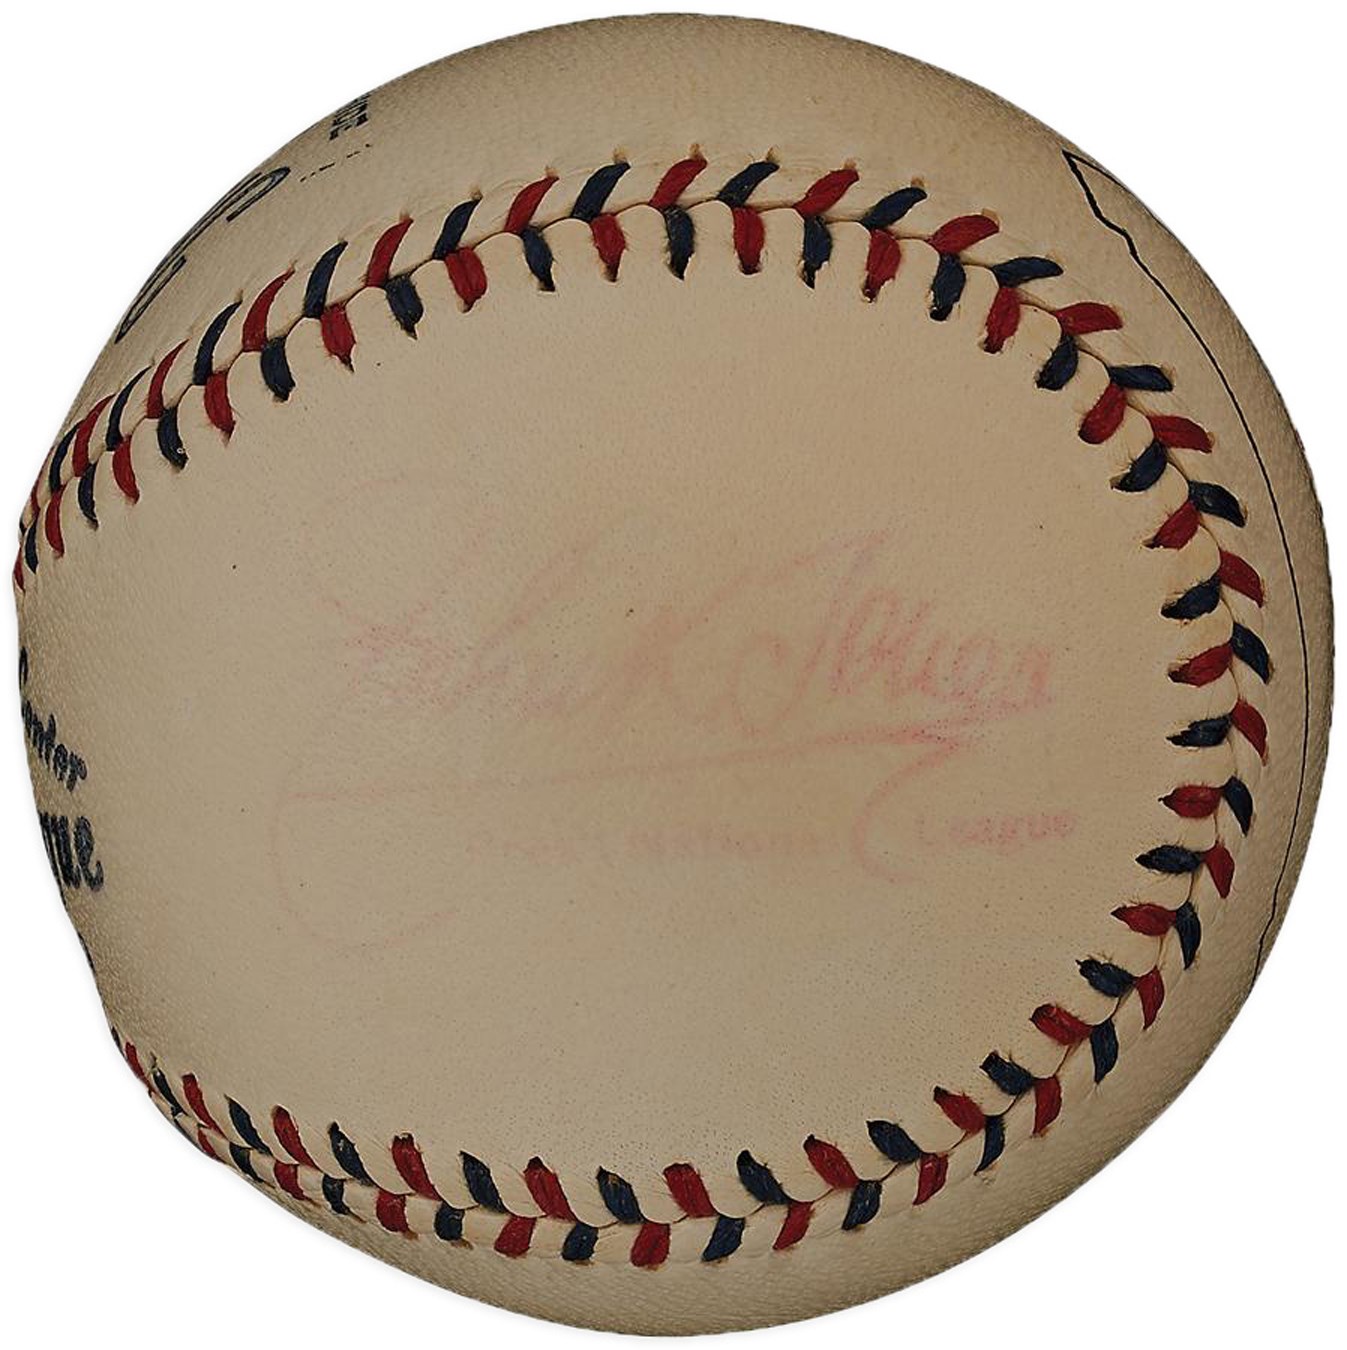 Baseball Equipment - Official National League Baseball with John K. Tener as President